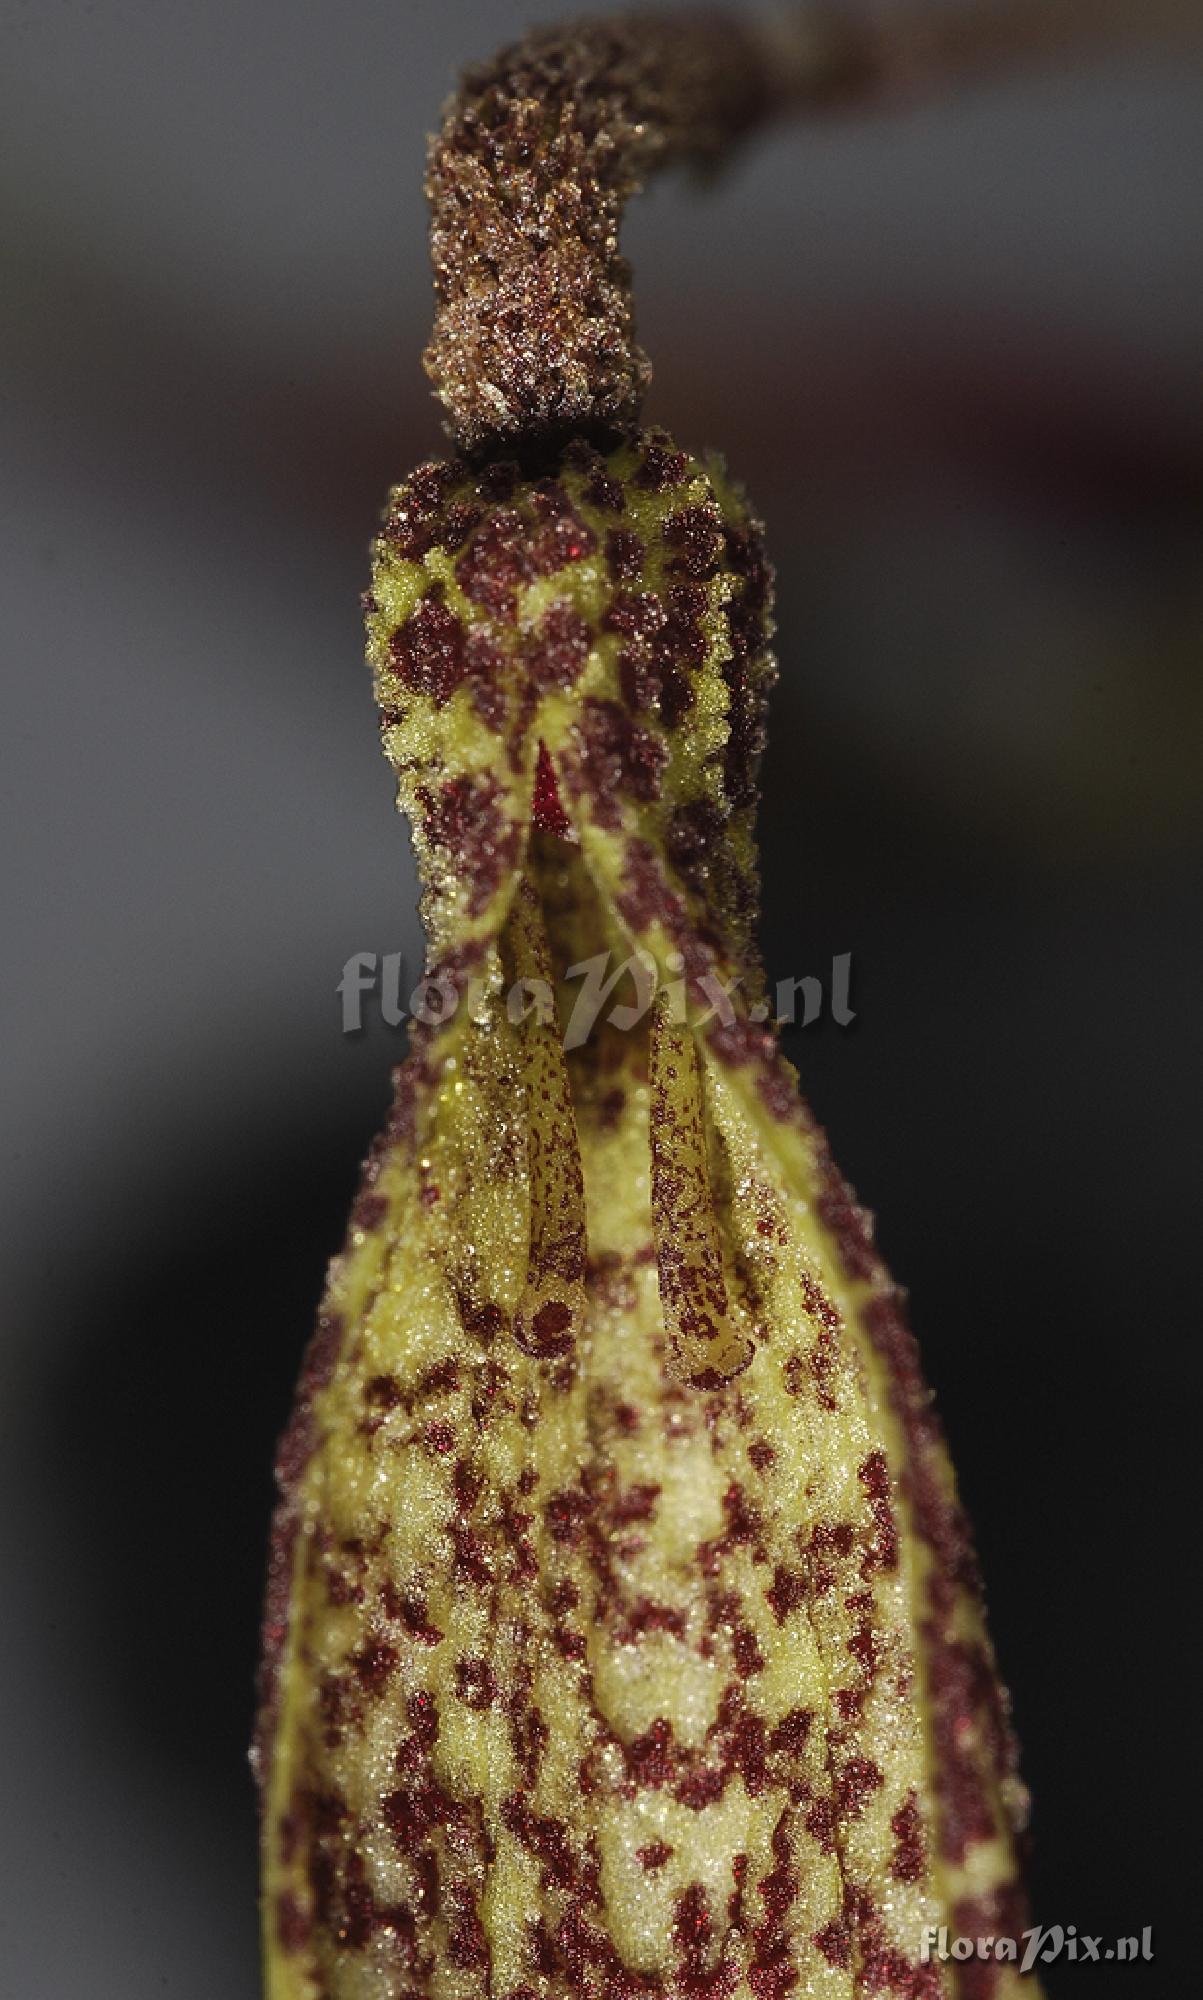 Bulbophyllum dischorense